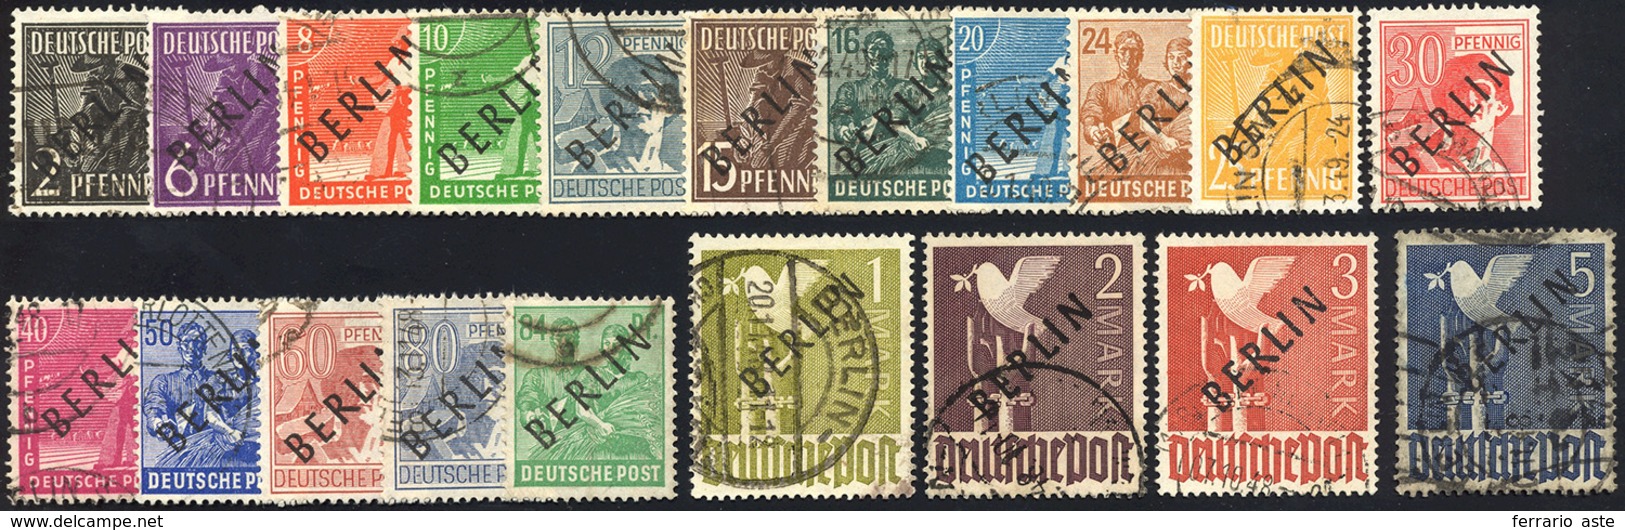 GERMANIA BERLINO 1949 - Soprastampati BERLIN In Nero (1/A-20/A), Usati, Perfetti. Timbrino Schleglel... - Andere-Europa